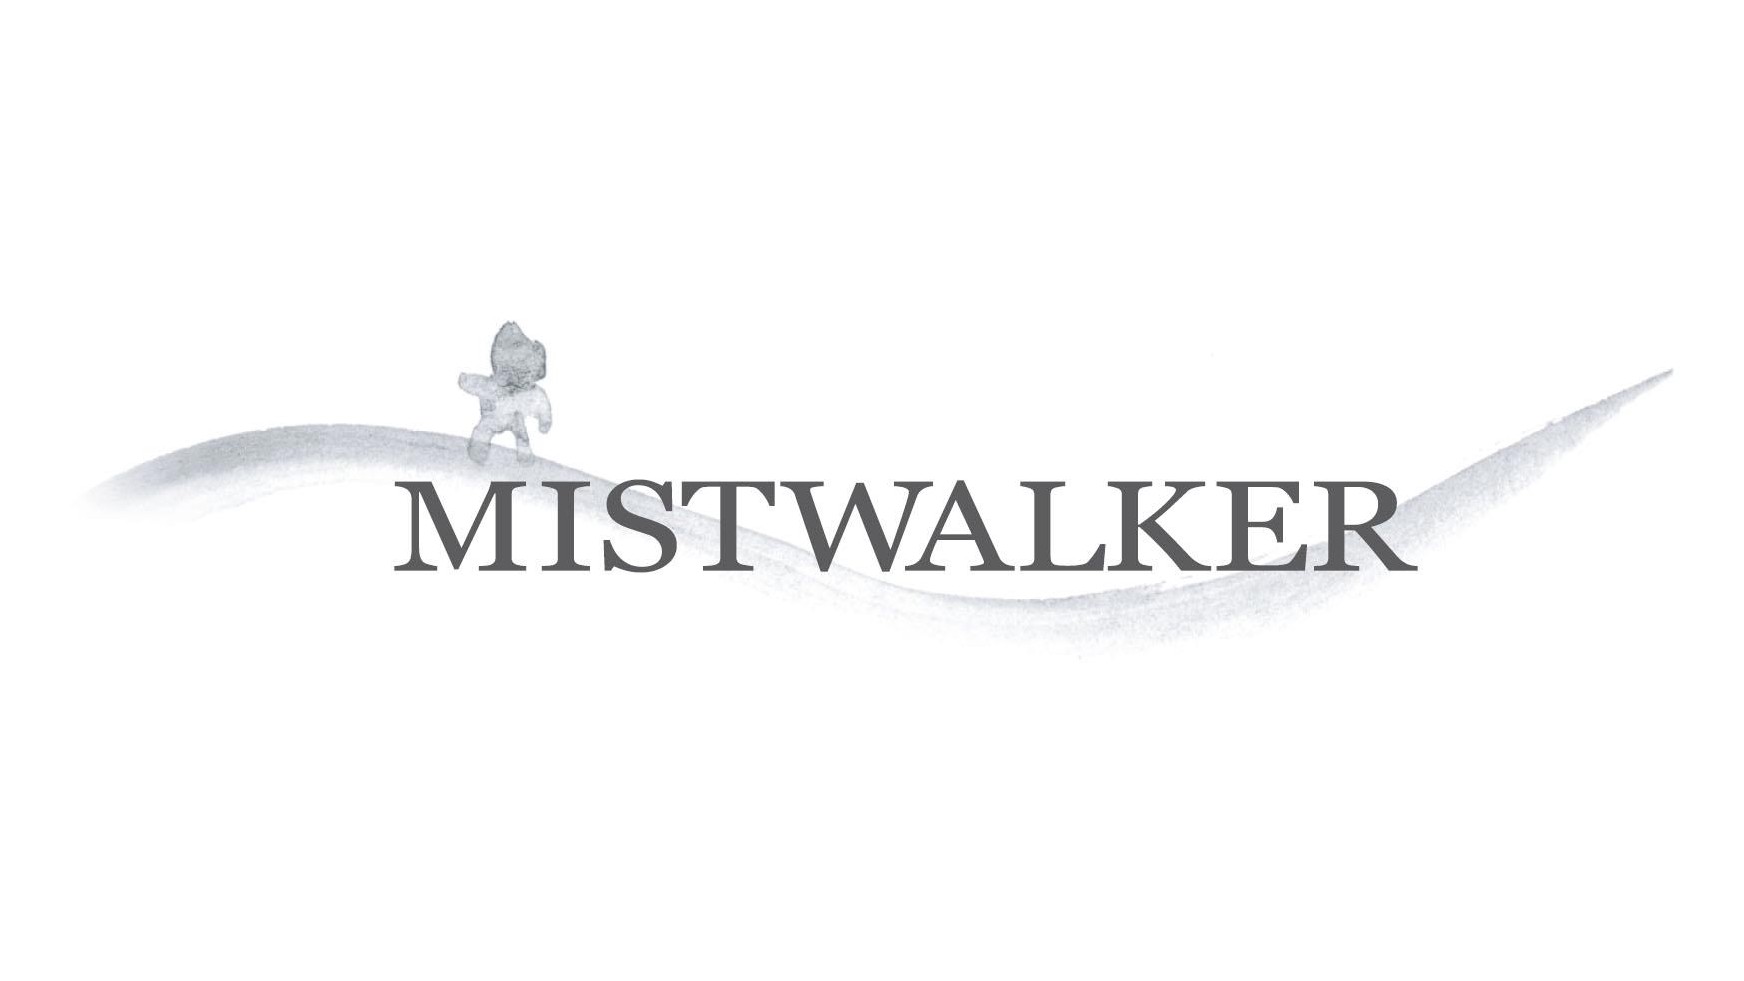 Nuove informazioni per il prossimo progetto dei Mistwalker, reveal il 22 Giugno!